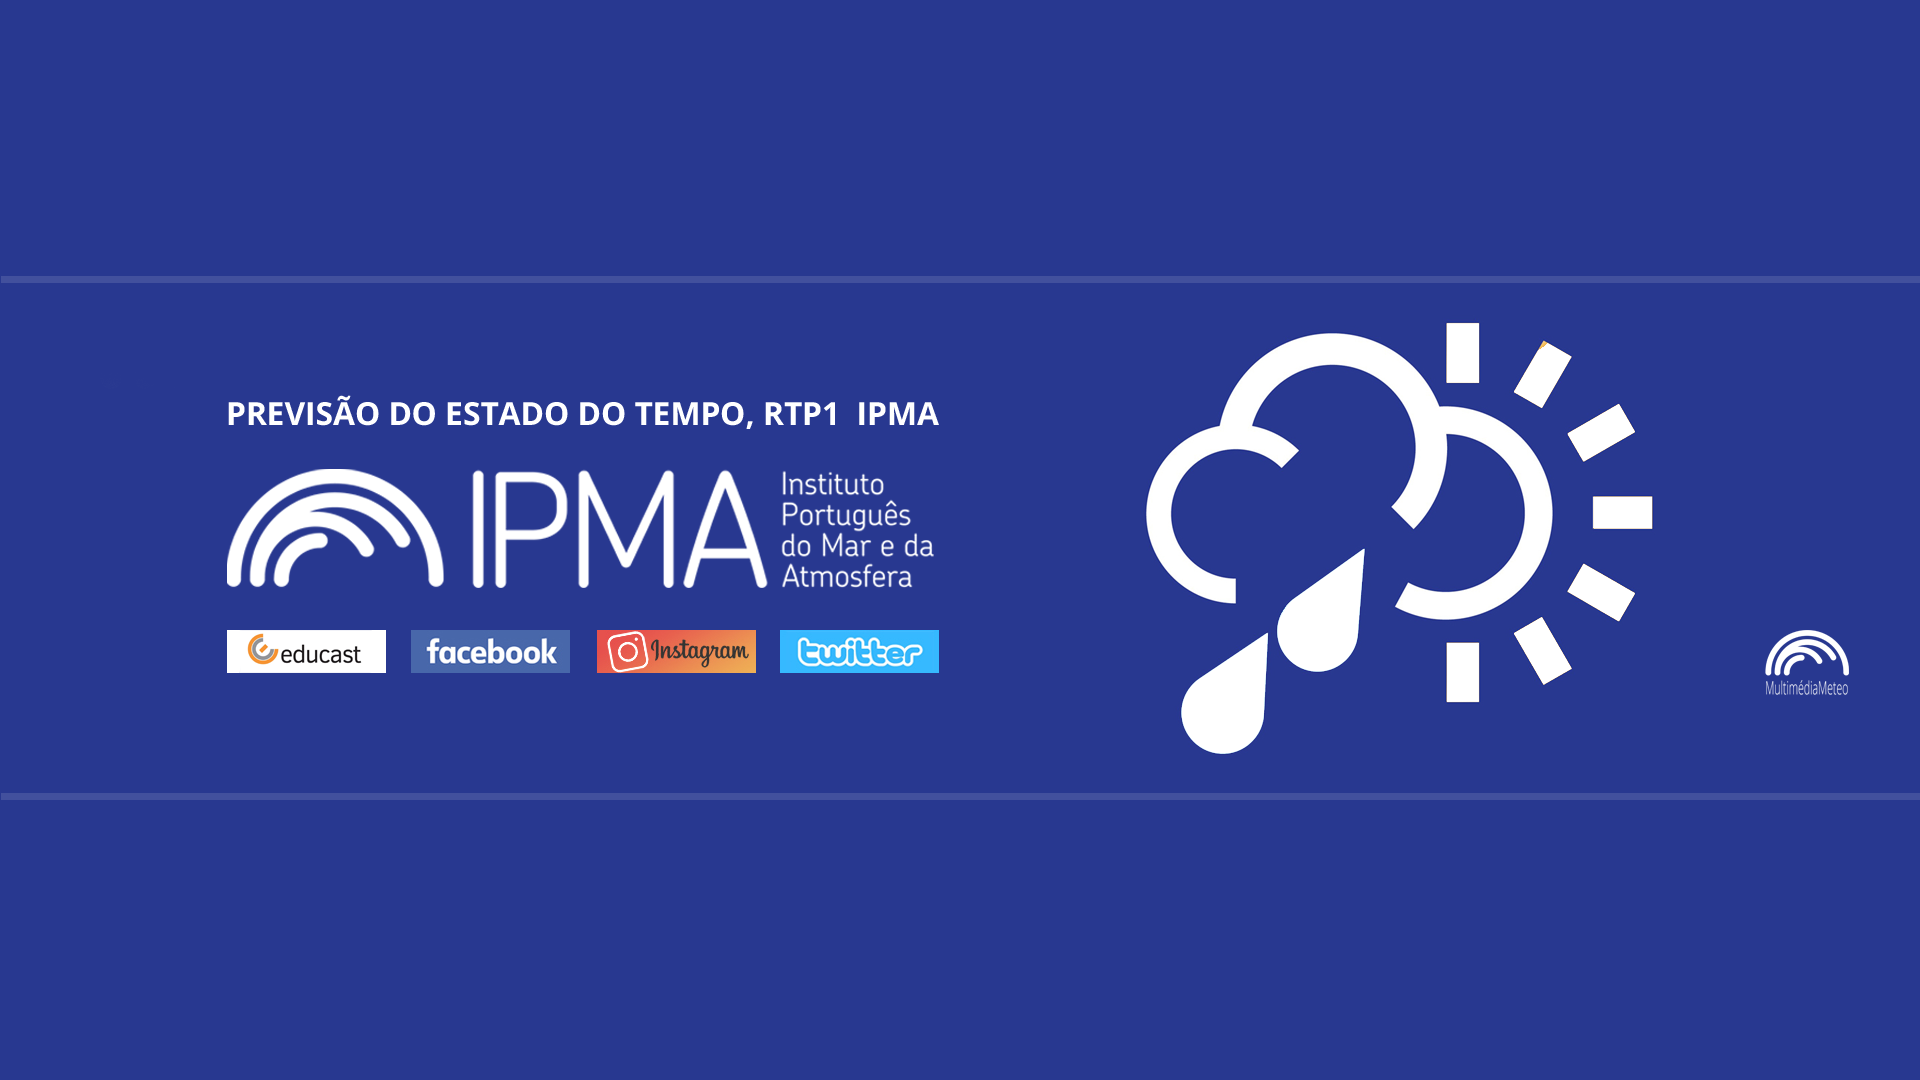  Previsão do estado do tempo, RTP1, 01-02-2022, IPMA.